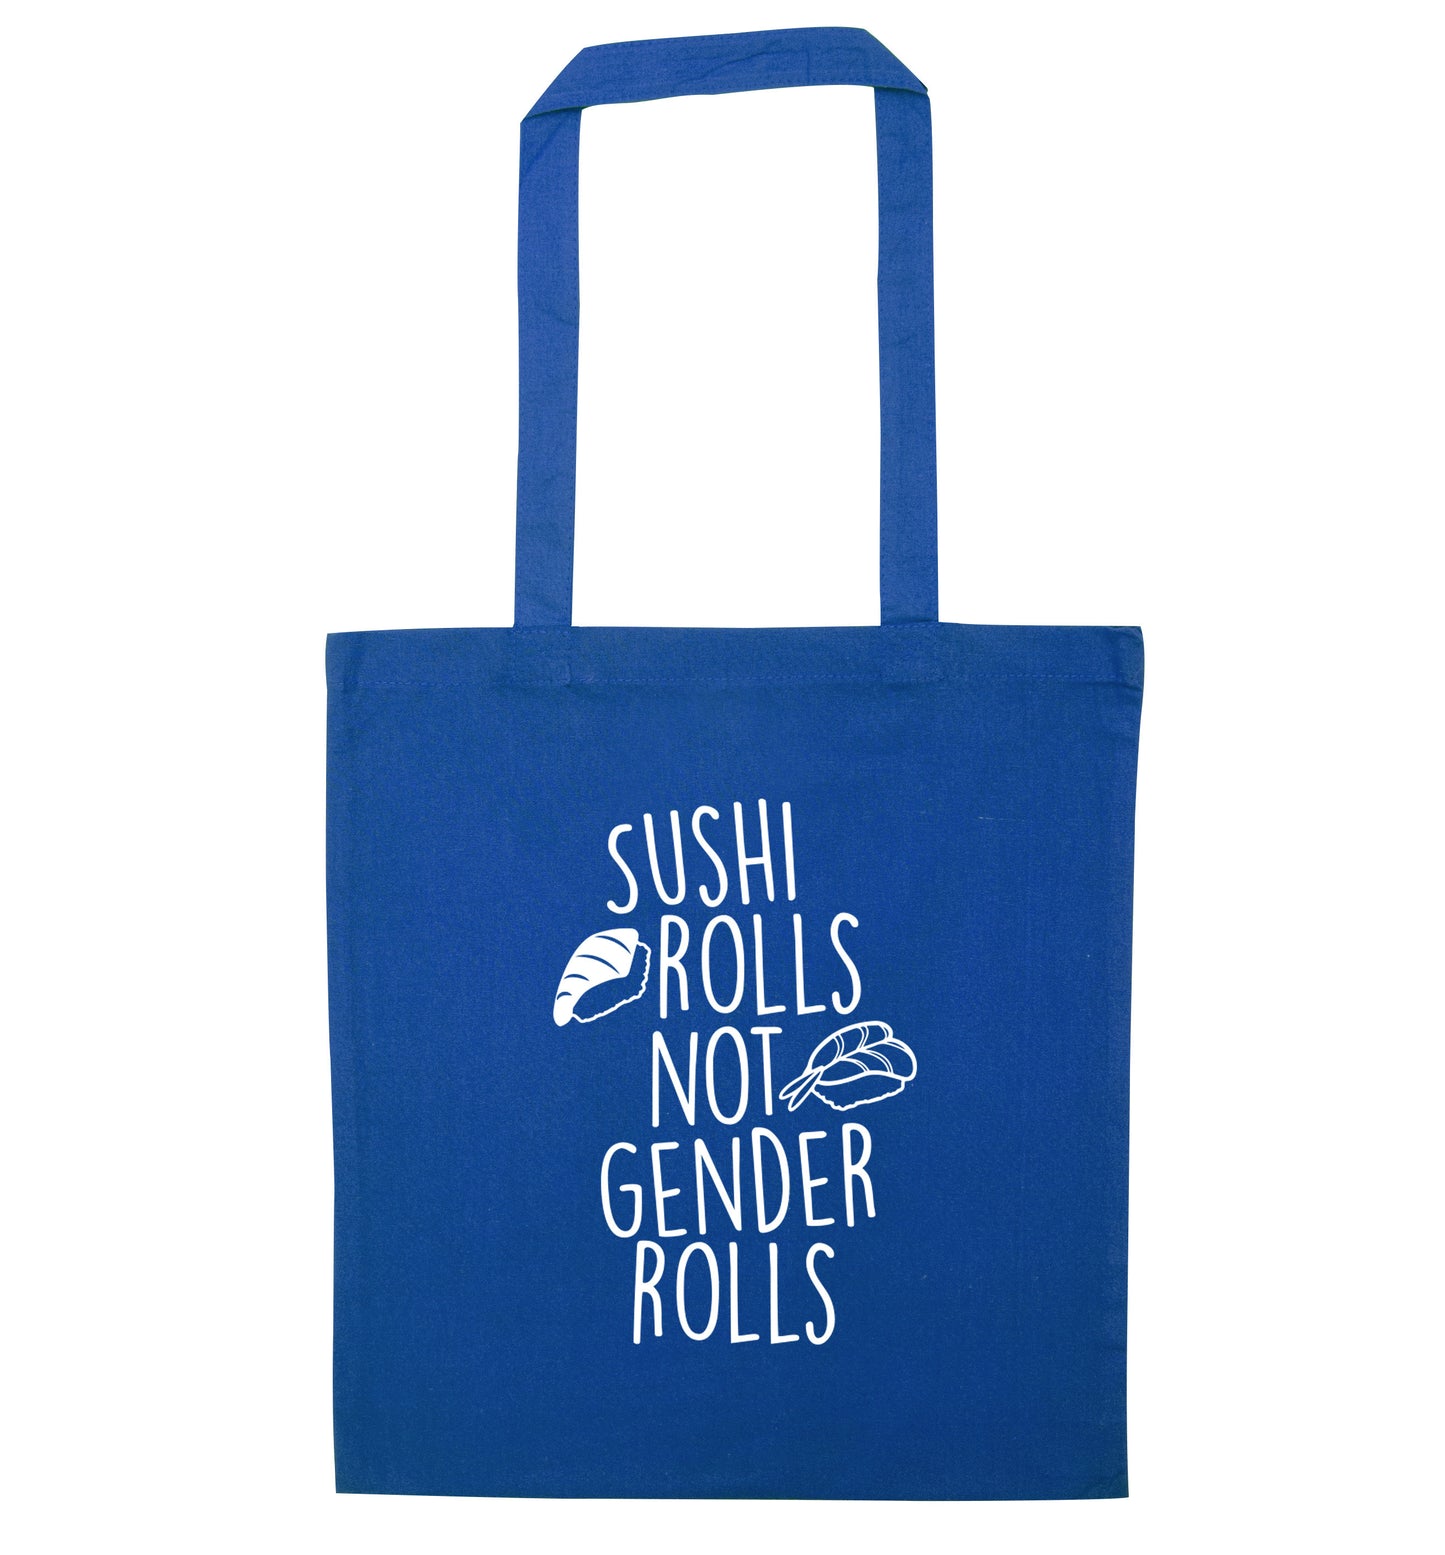 Sushi rolls not gender rolls blue tote bag